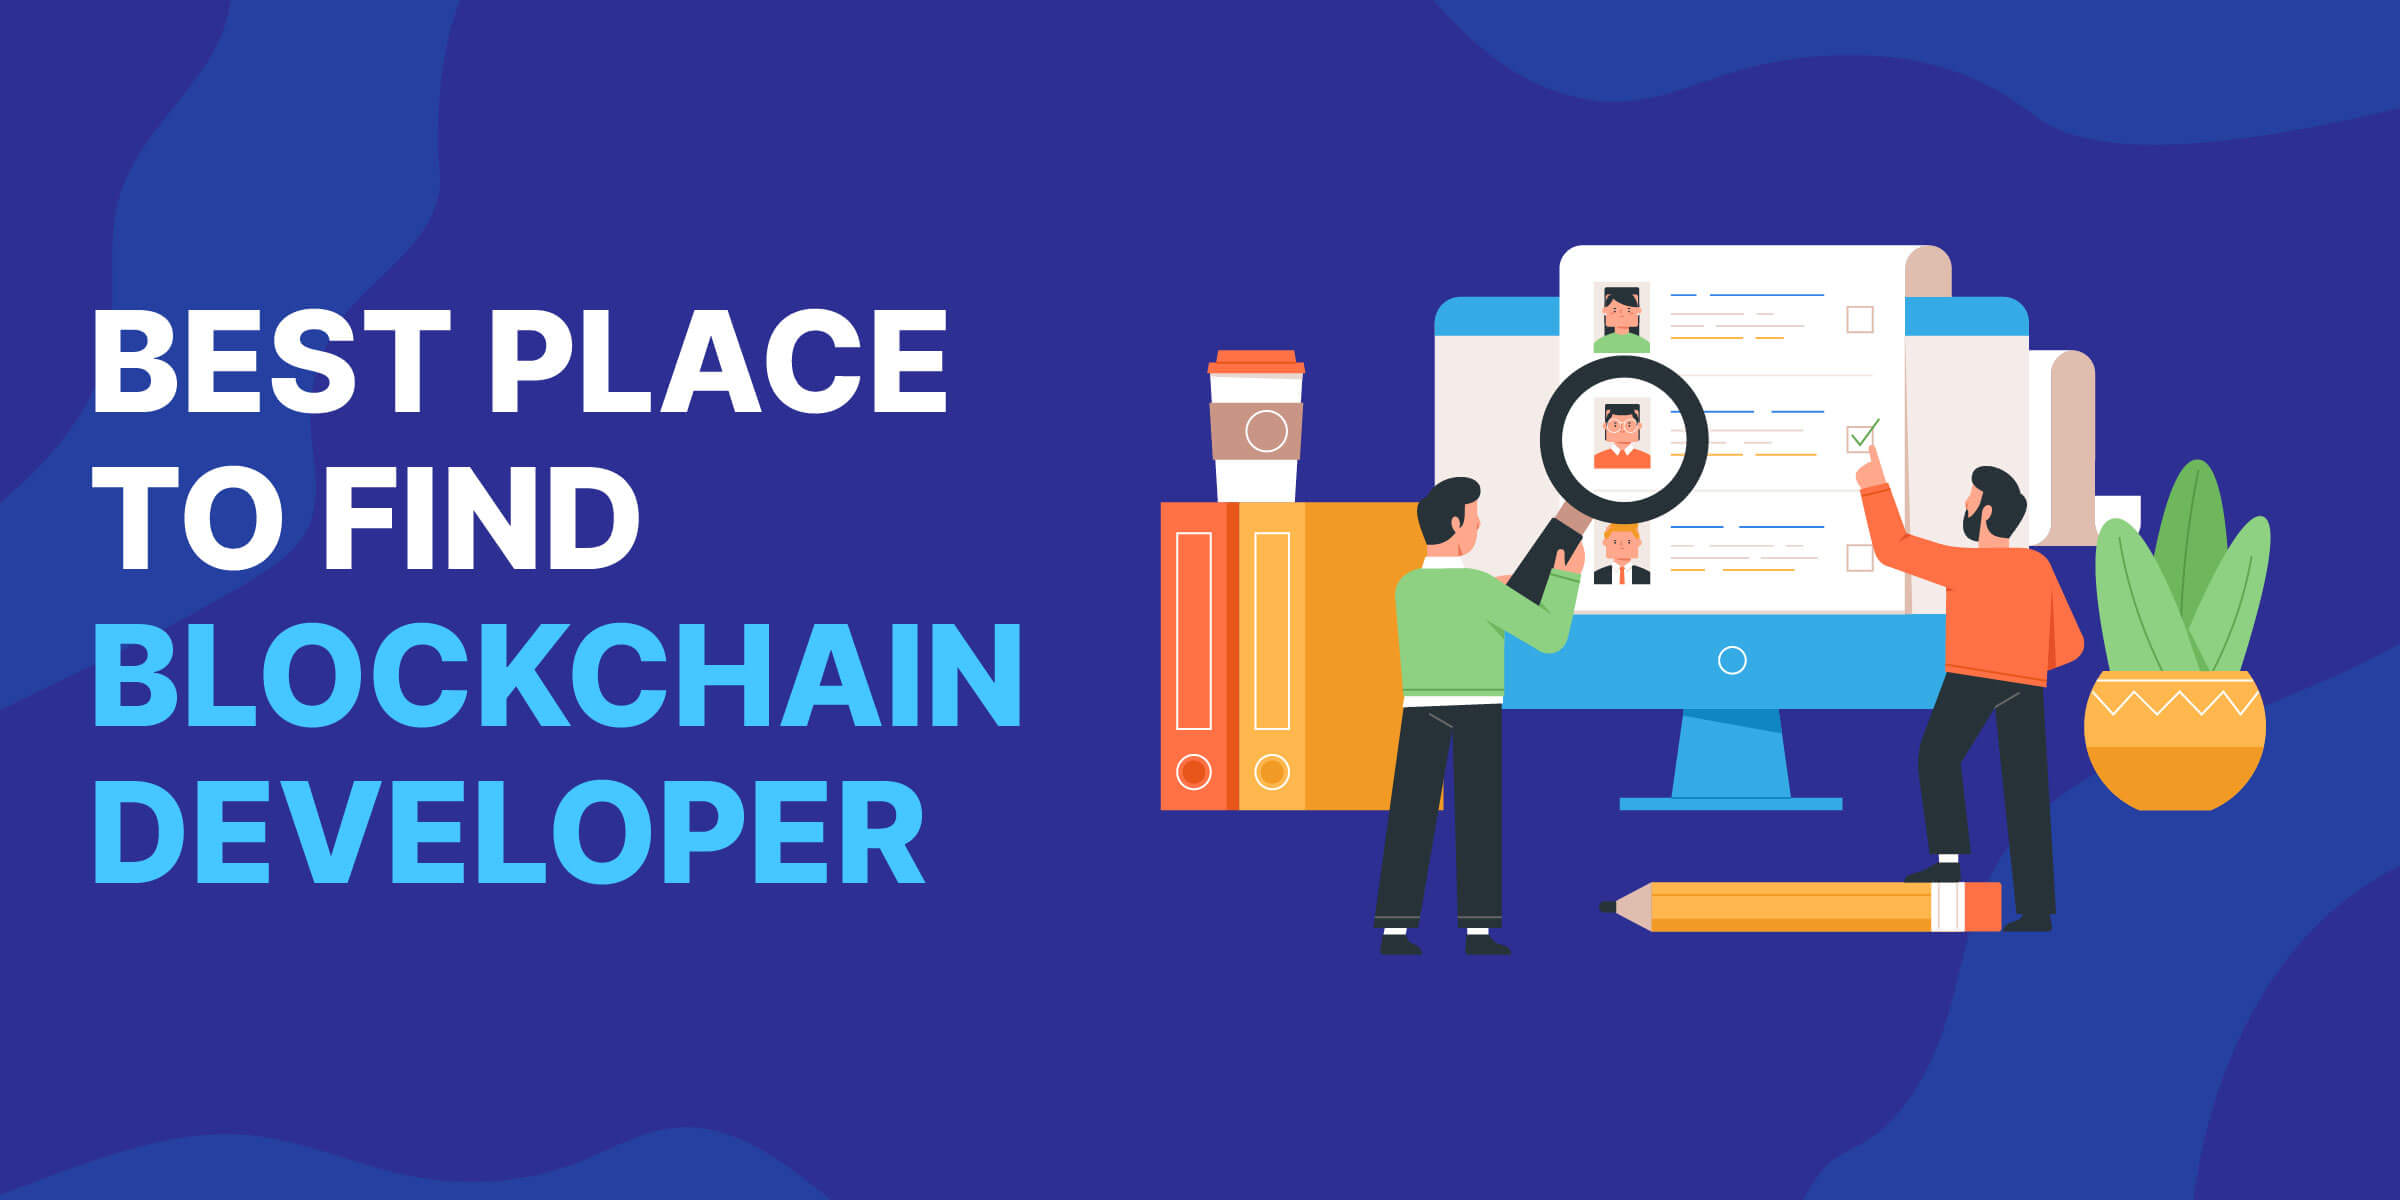 Best Place to Find Blockchain Developer